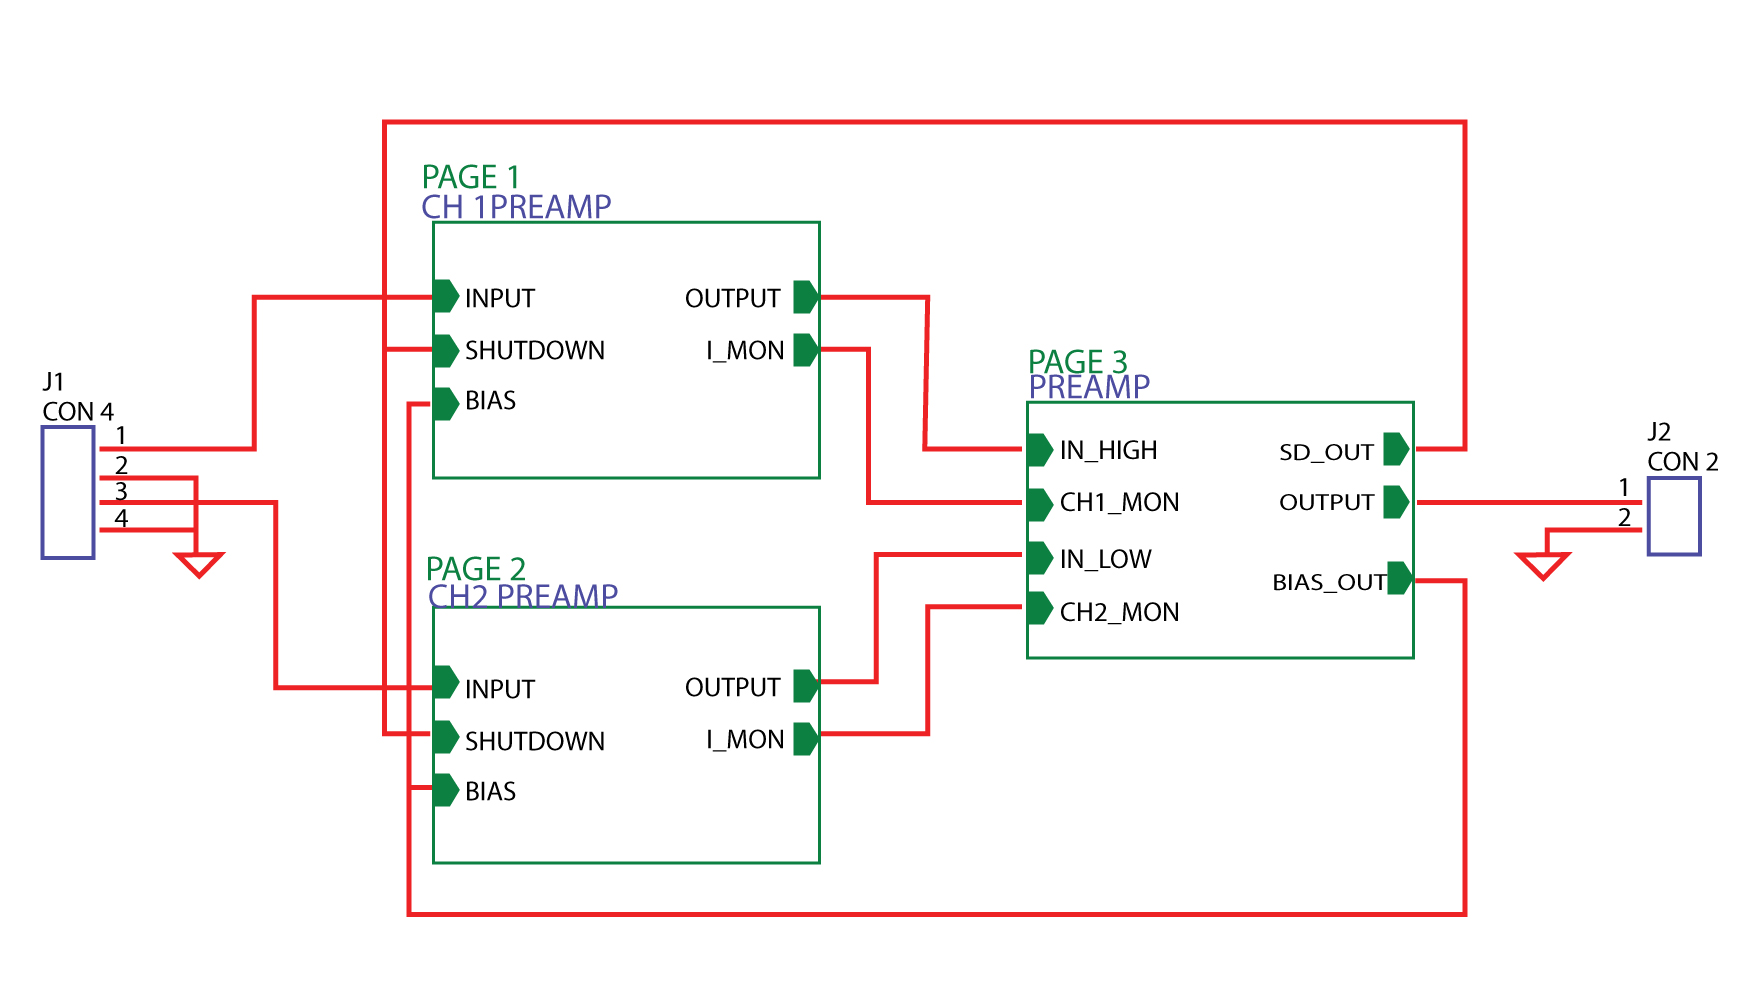 rc circuit board parts diagram name